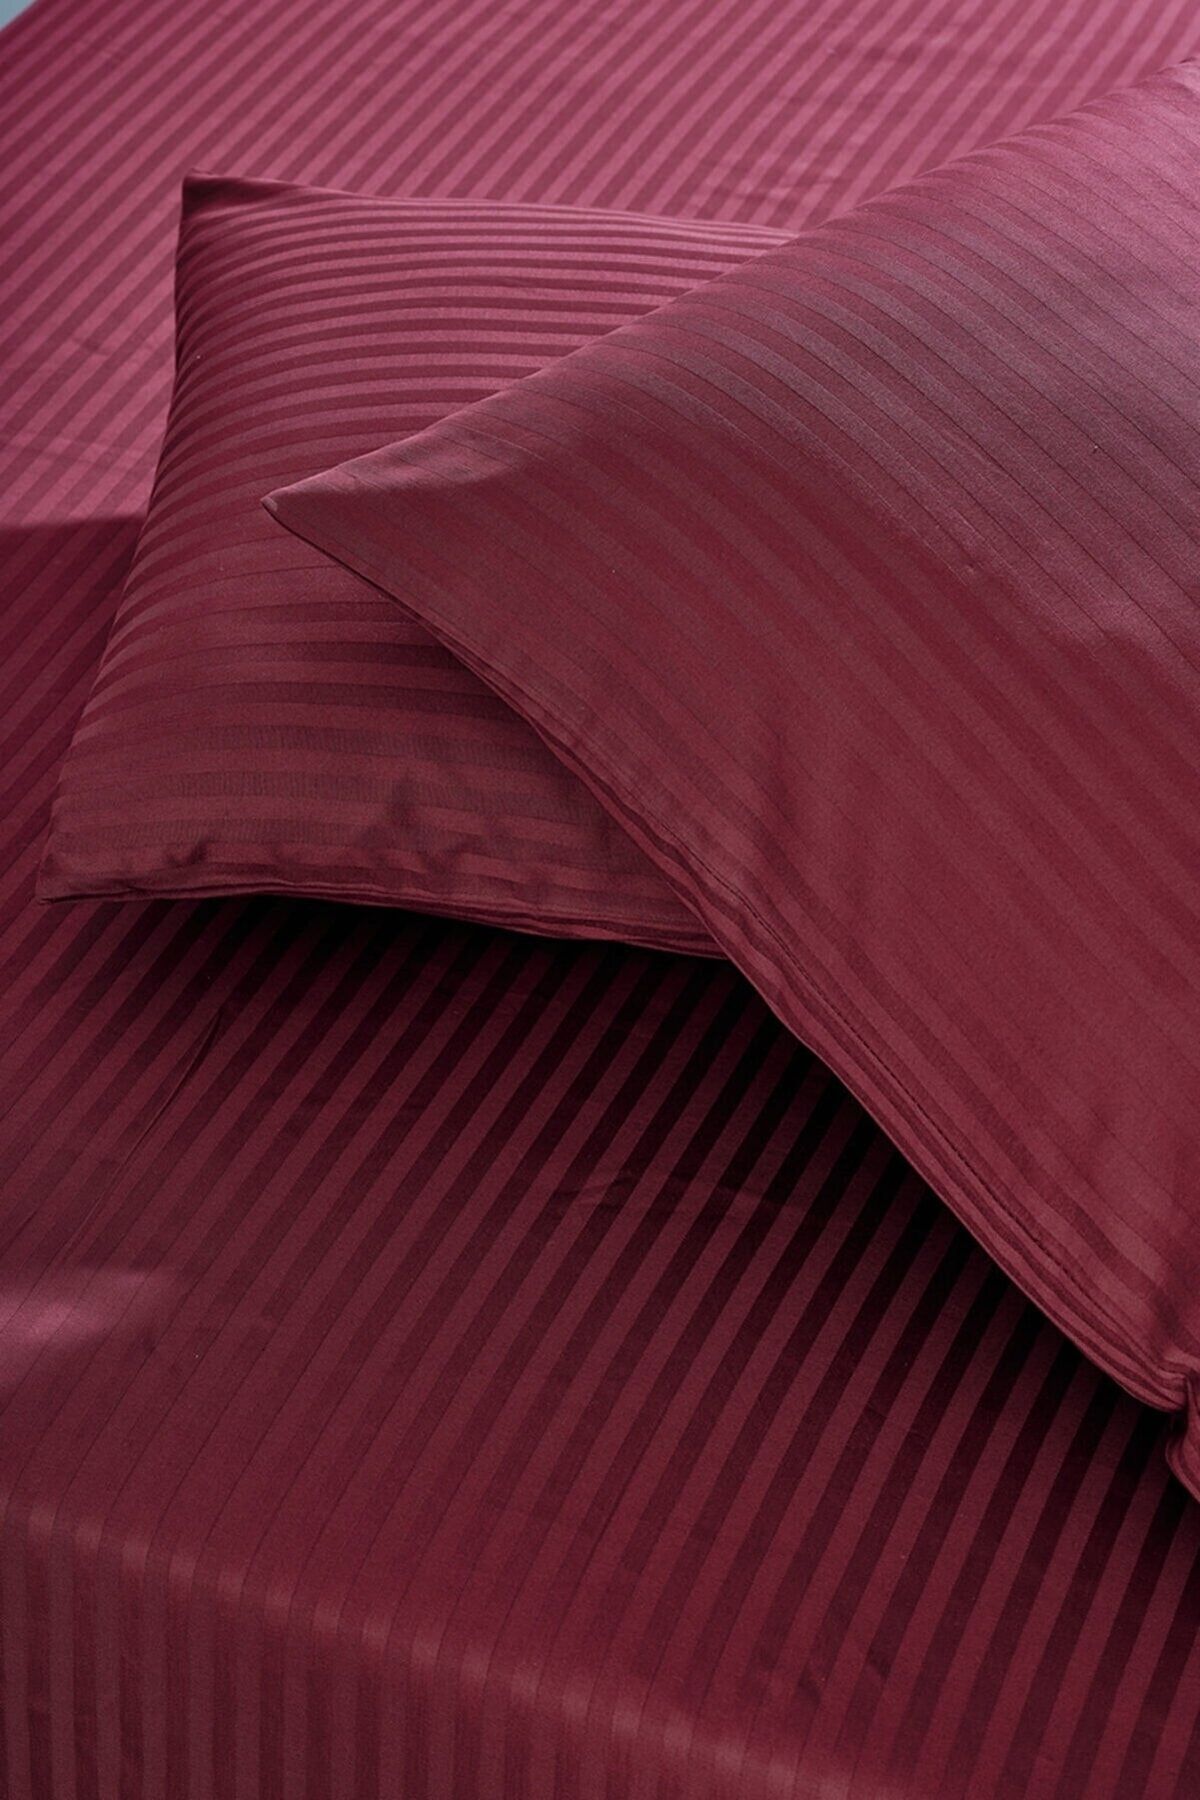 Nevresim Dünyası Basic Stripe Çift Kişilik Fitted Micro Saten Çarşaf Ve 2 Yastık Kılıfı